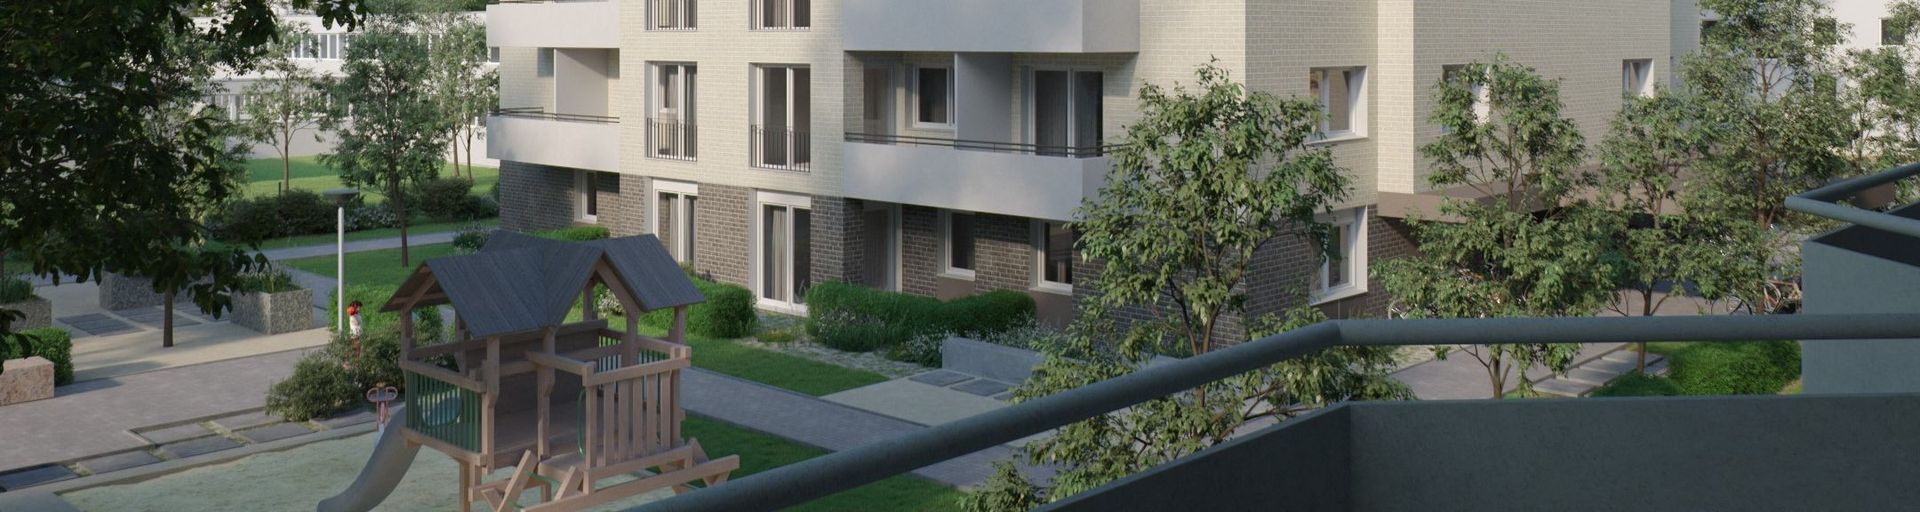 Ein Gebäude der HOWOGE Wohnungsbaugesellschaft mbH aus Berlin, Brandenburg Gotlindestrasse in Berlin - Visualisierte Darstellung des Wohnungsbau mit 42 Wohneinheiten